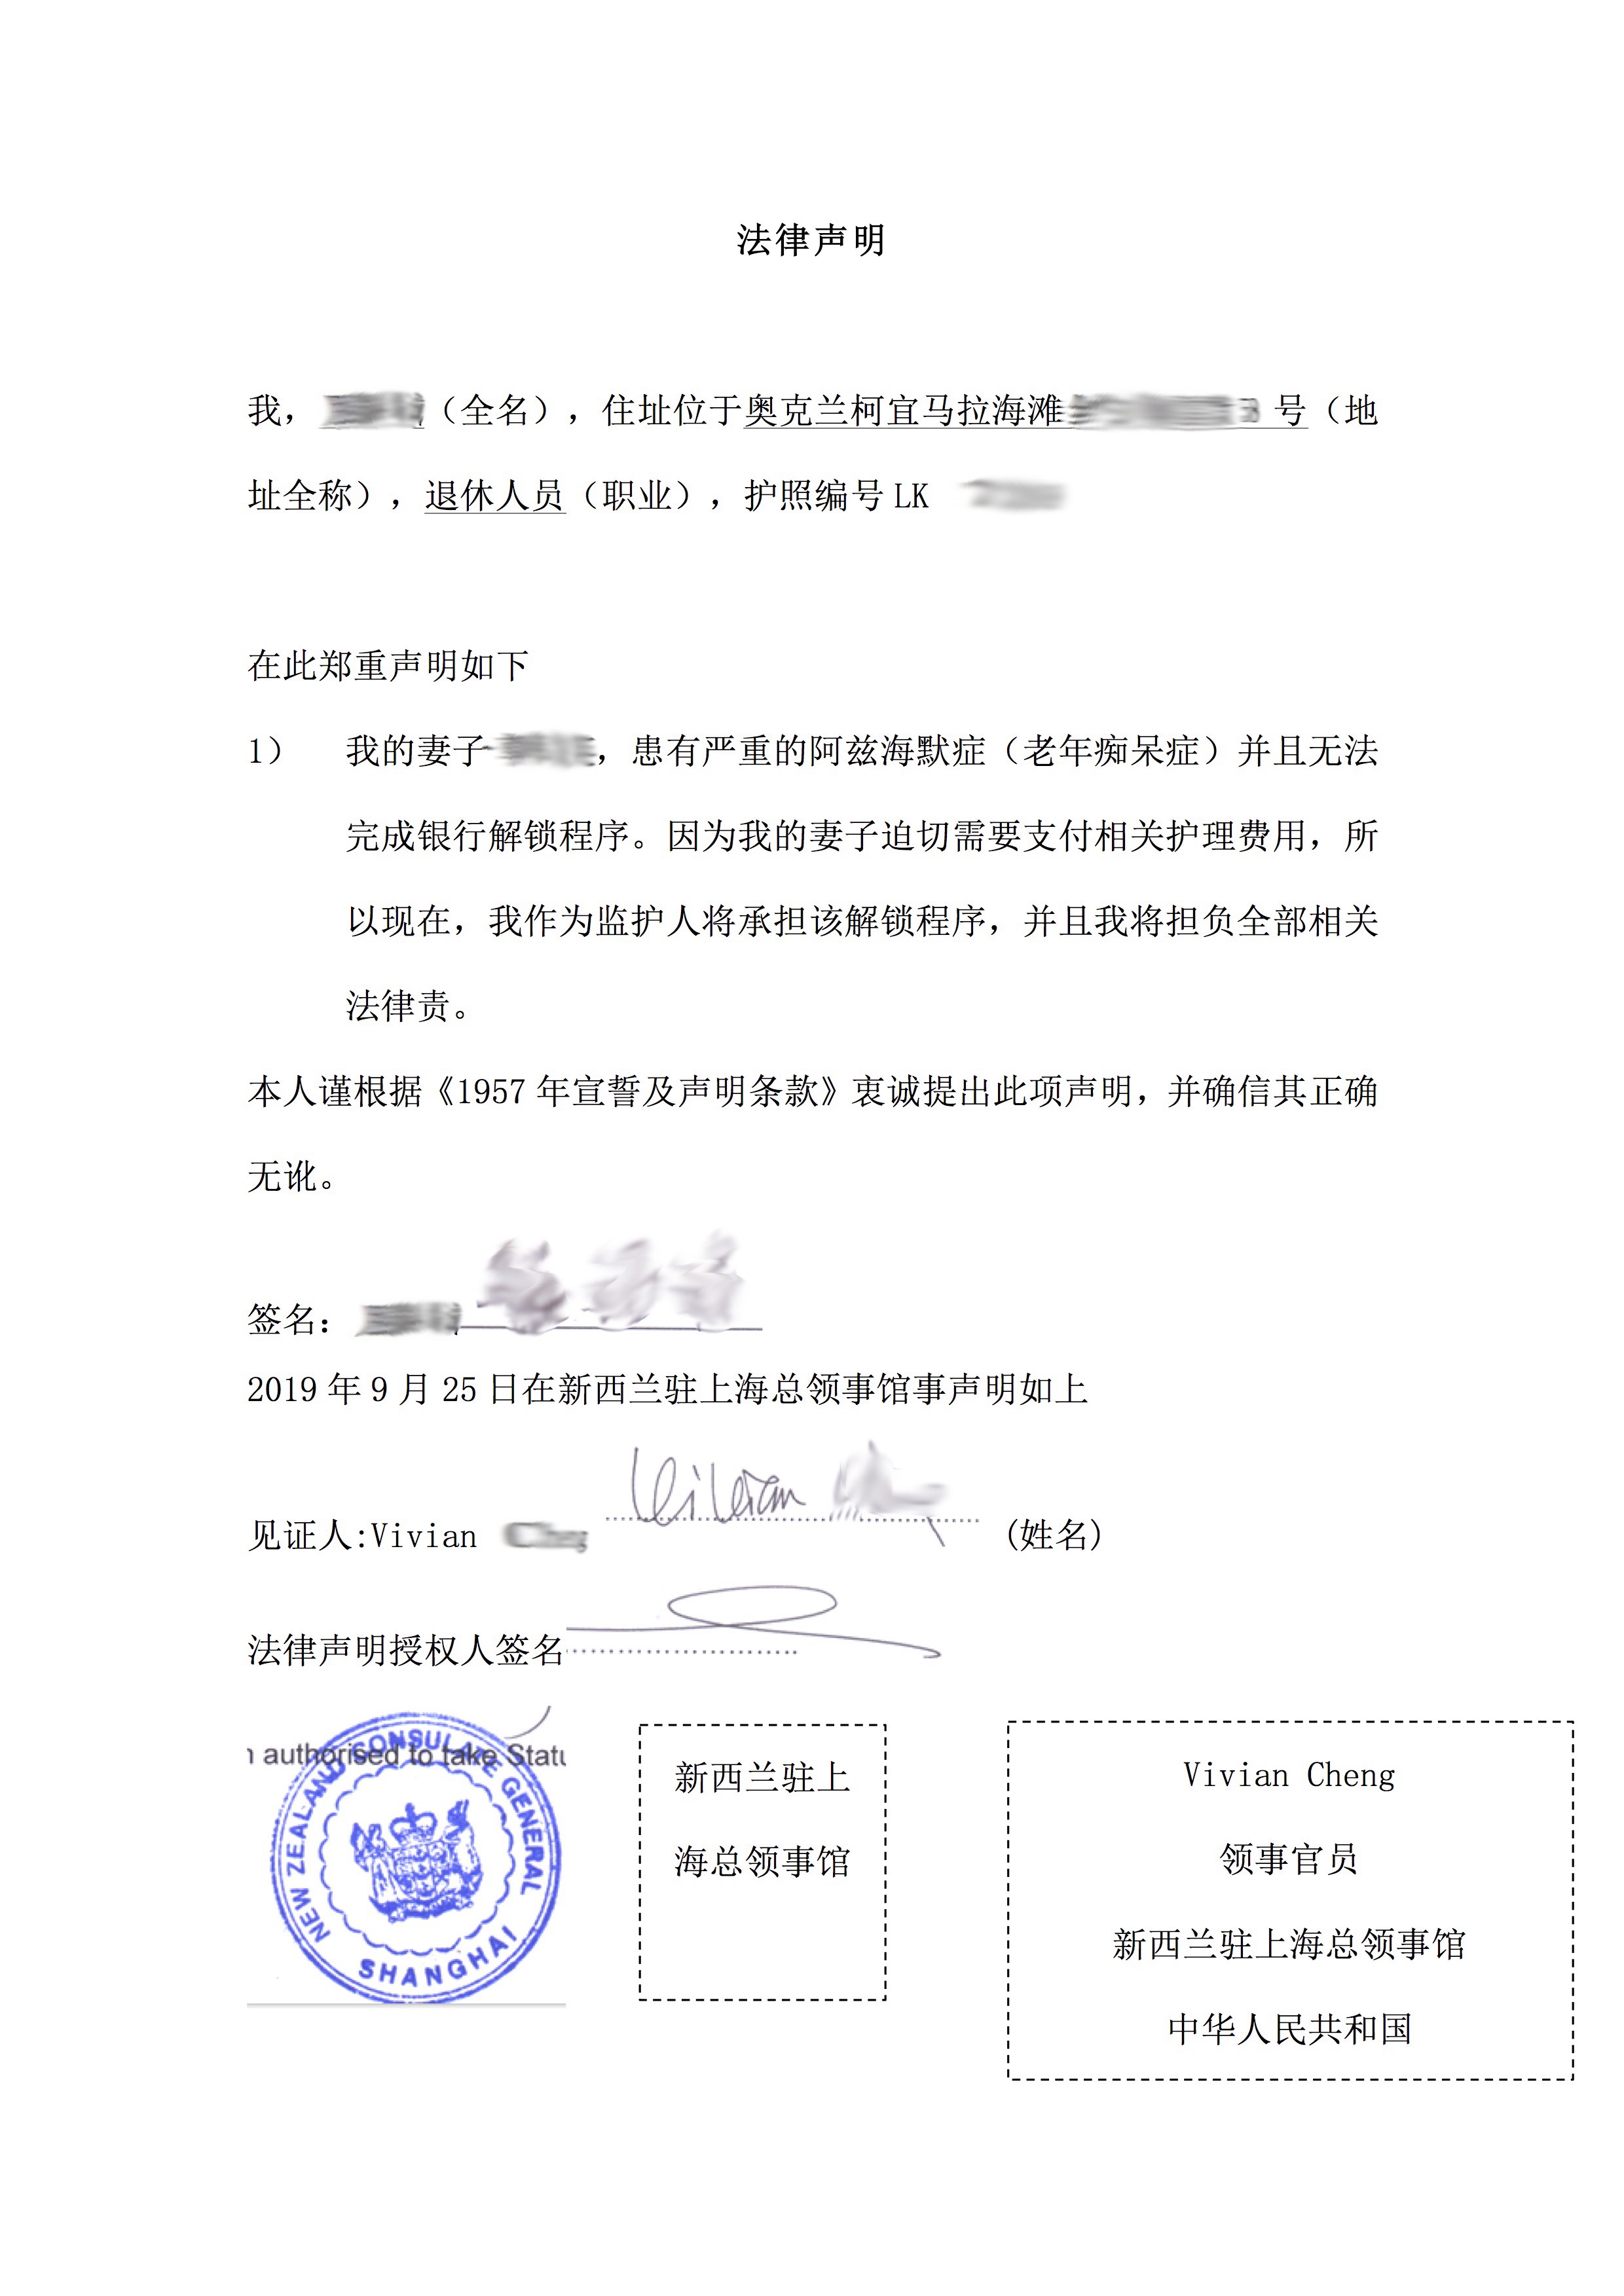 法律声明 - 新西兰驻上海领事馆法律声明/宣誓书翻译认证盖章